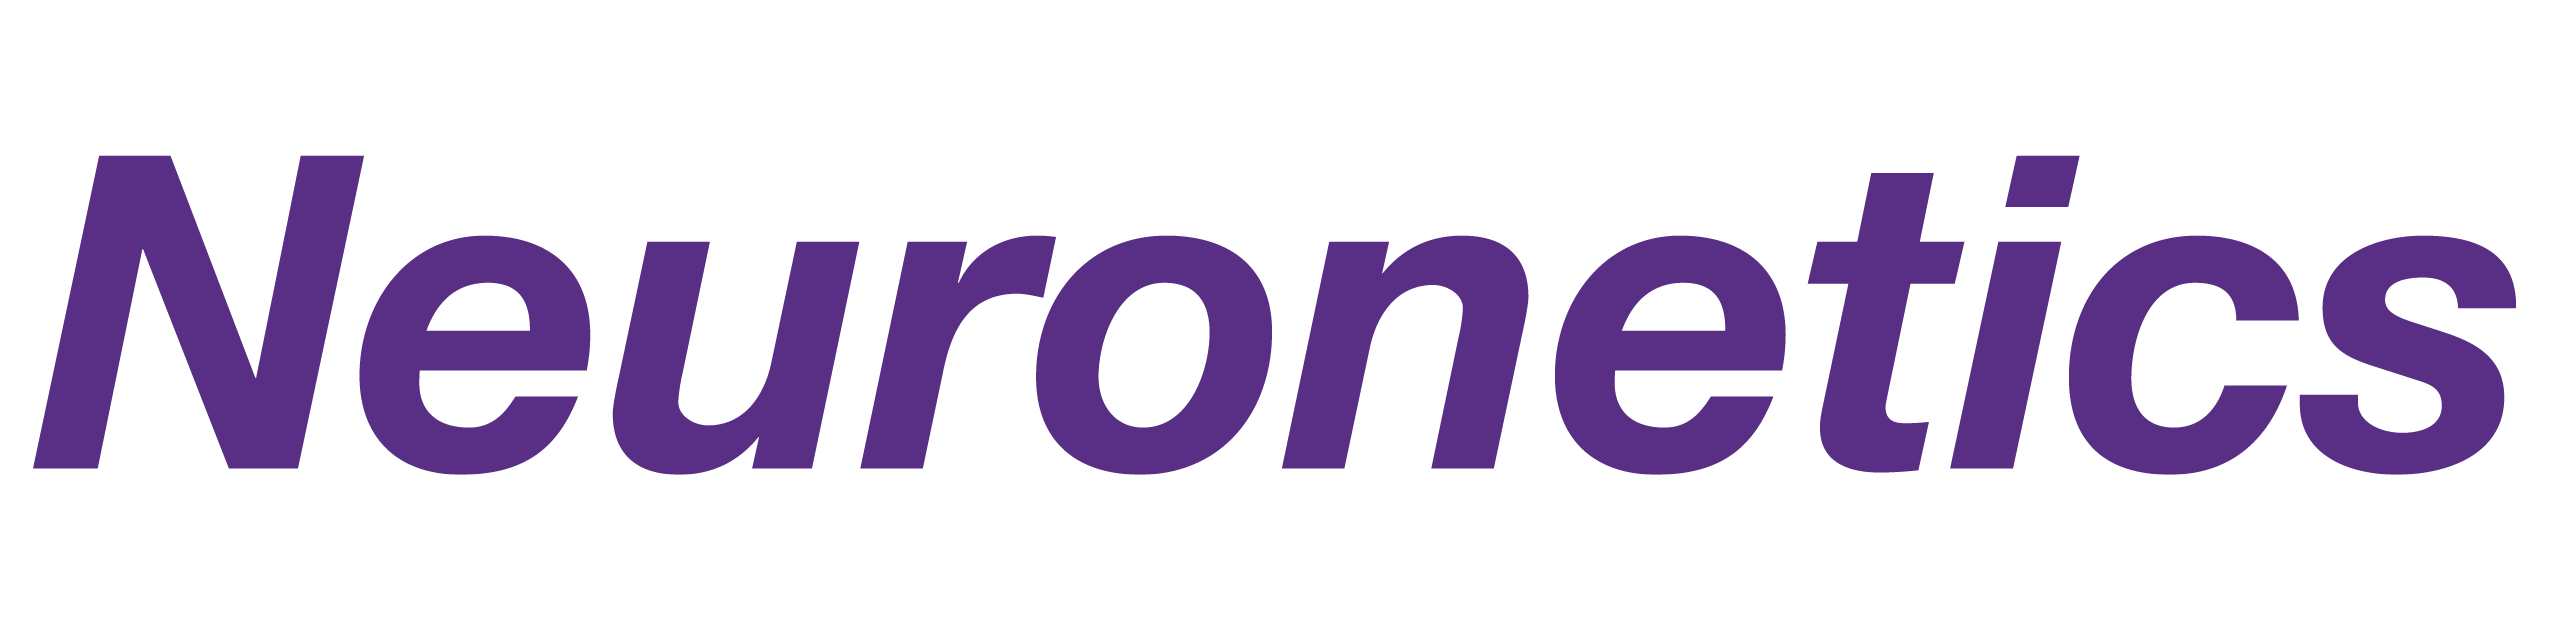 Neuronetics_logo-RGB purple.png